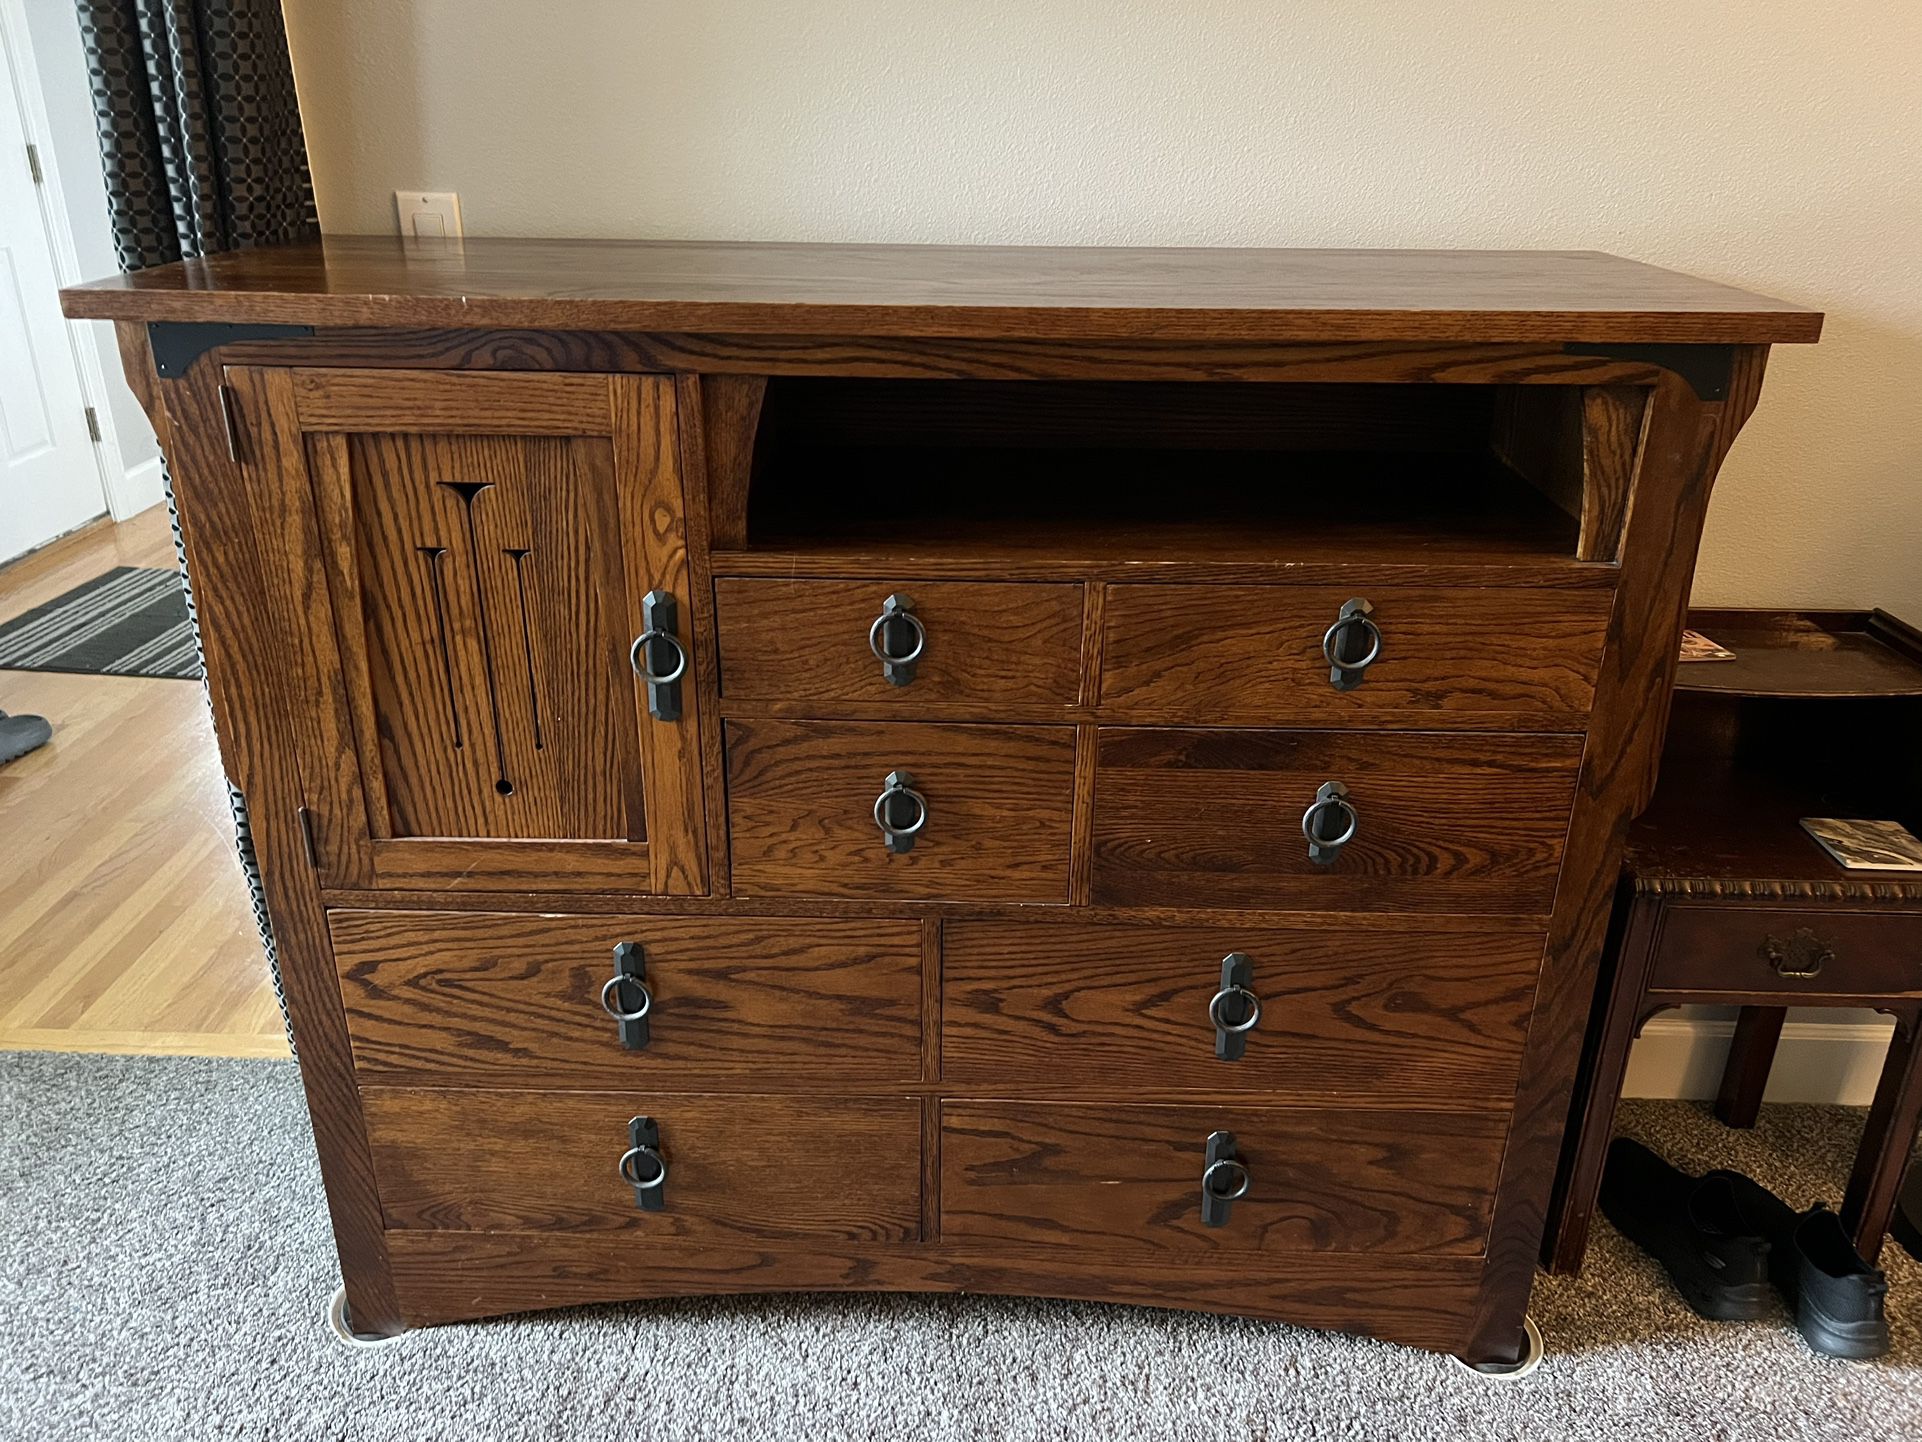 Sale Pending / Solid Wood Dresser